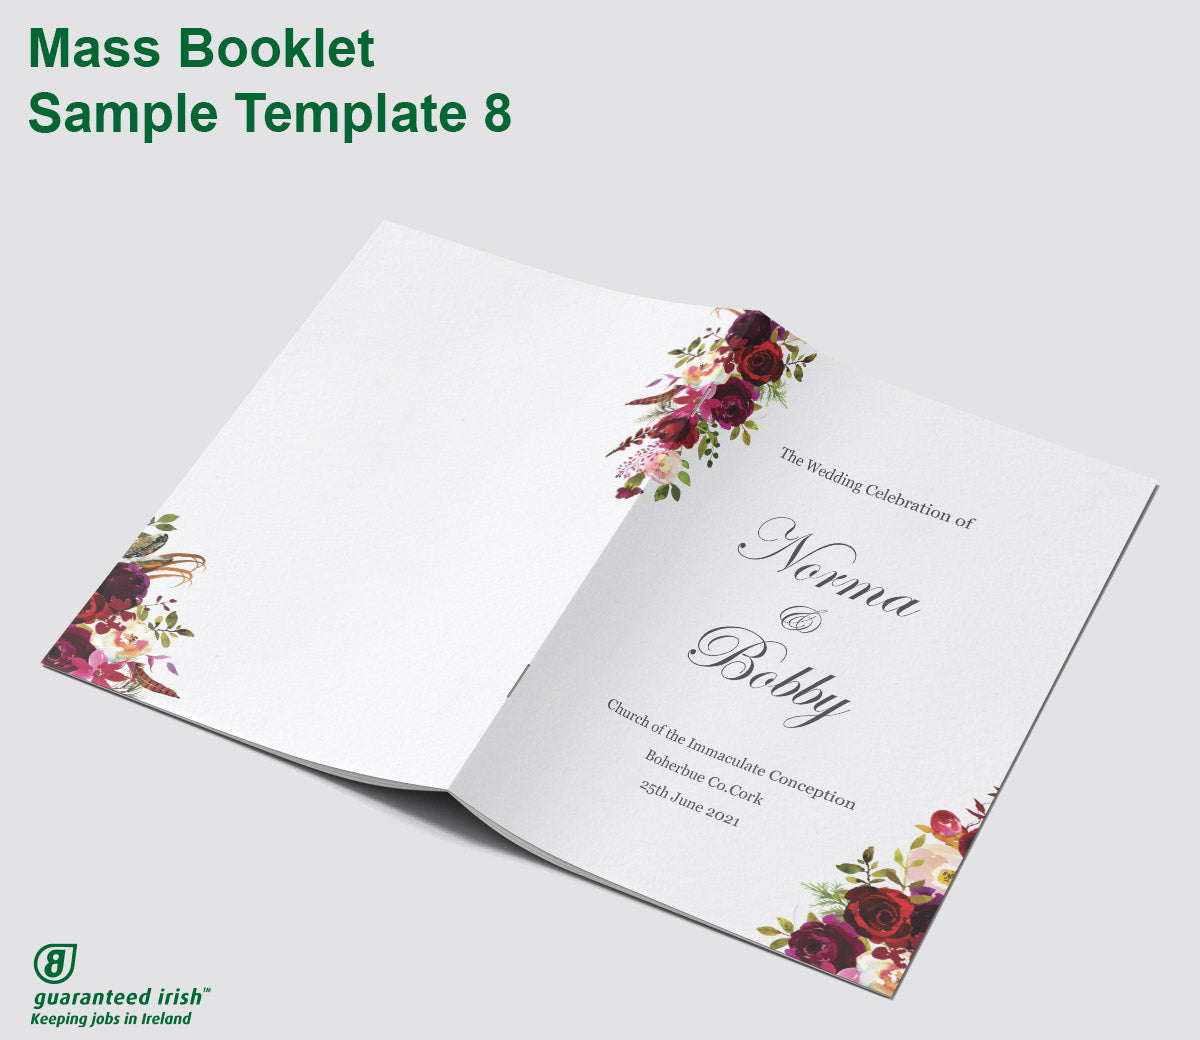 Wedding Mass Booklet Template